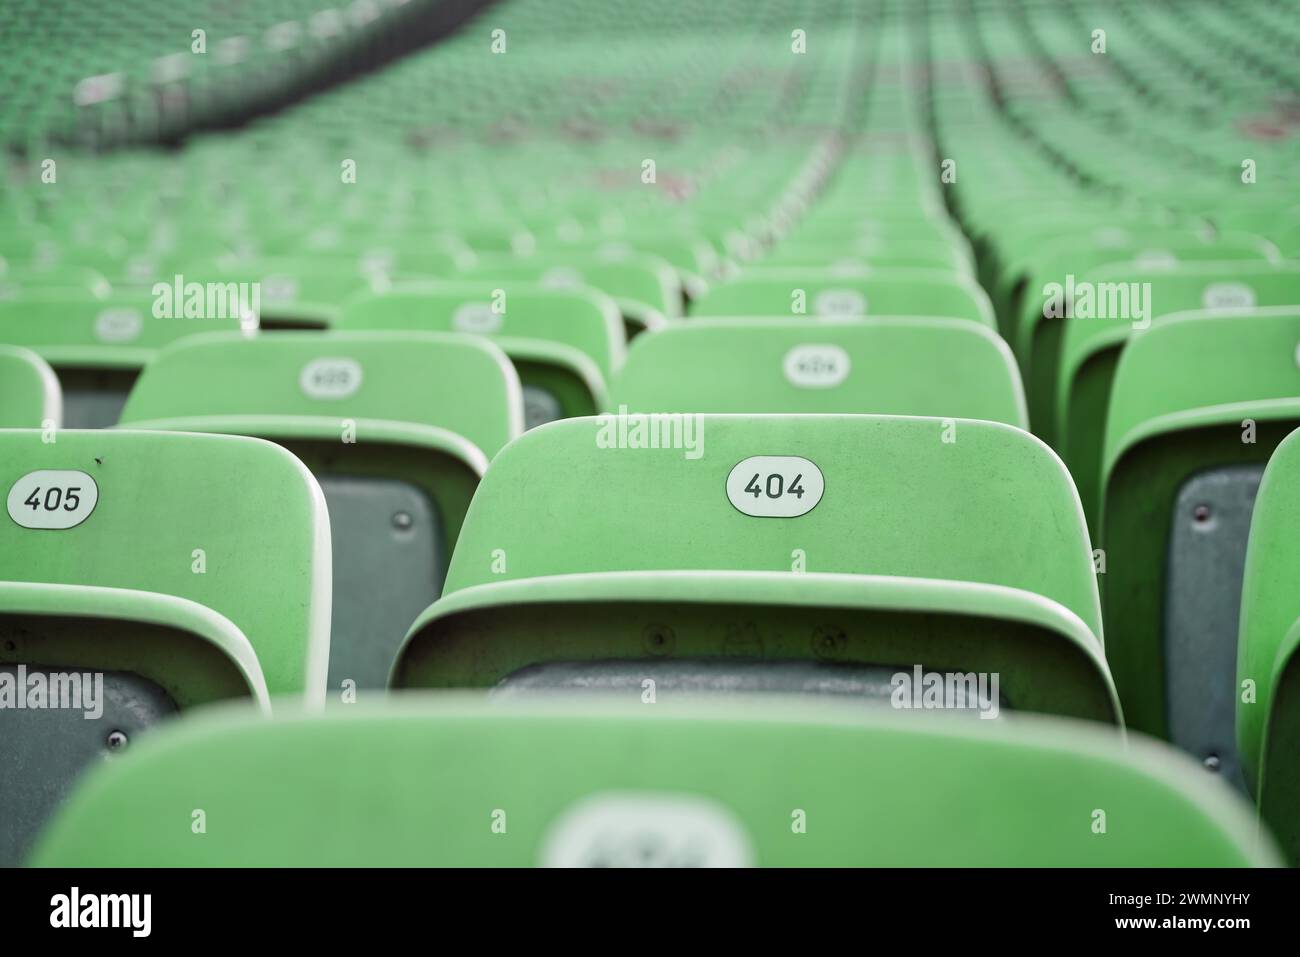 Fehler 404: Sitz nicht gefunden. Reihen grüner Sitze mit Nummern in einem Stadion. Stockfoto